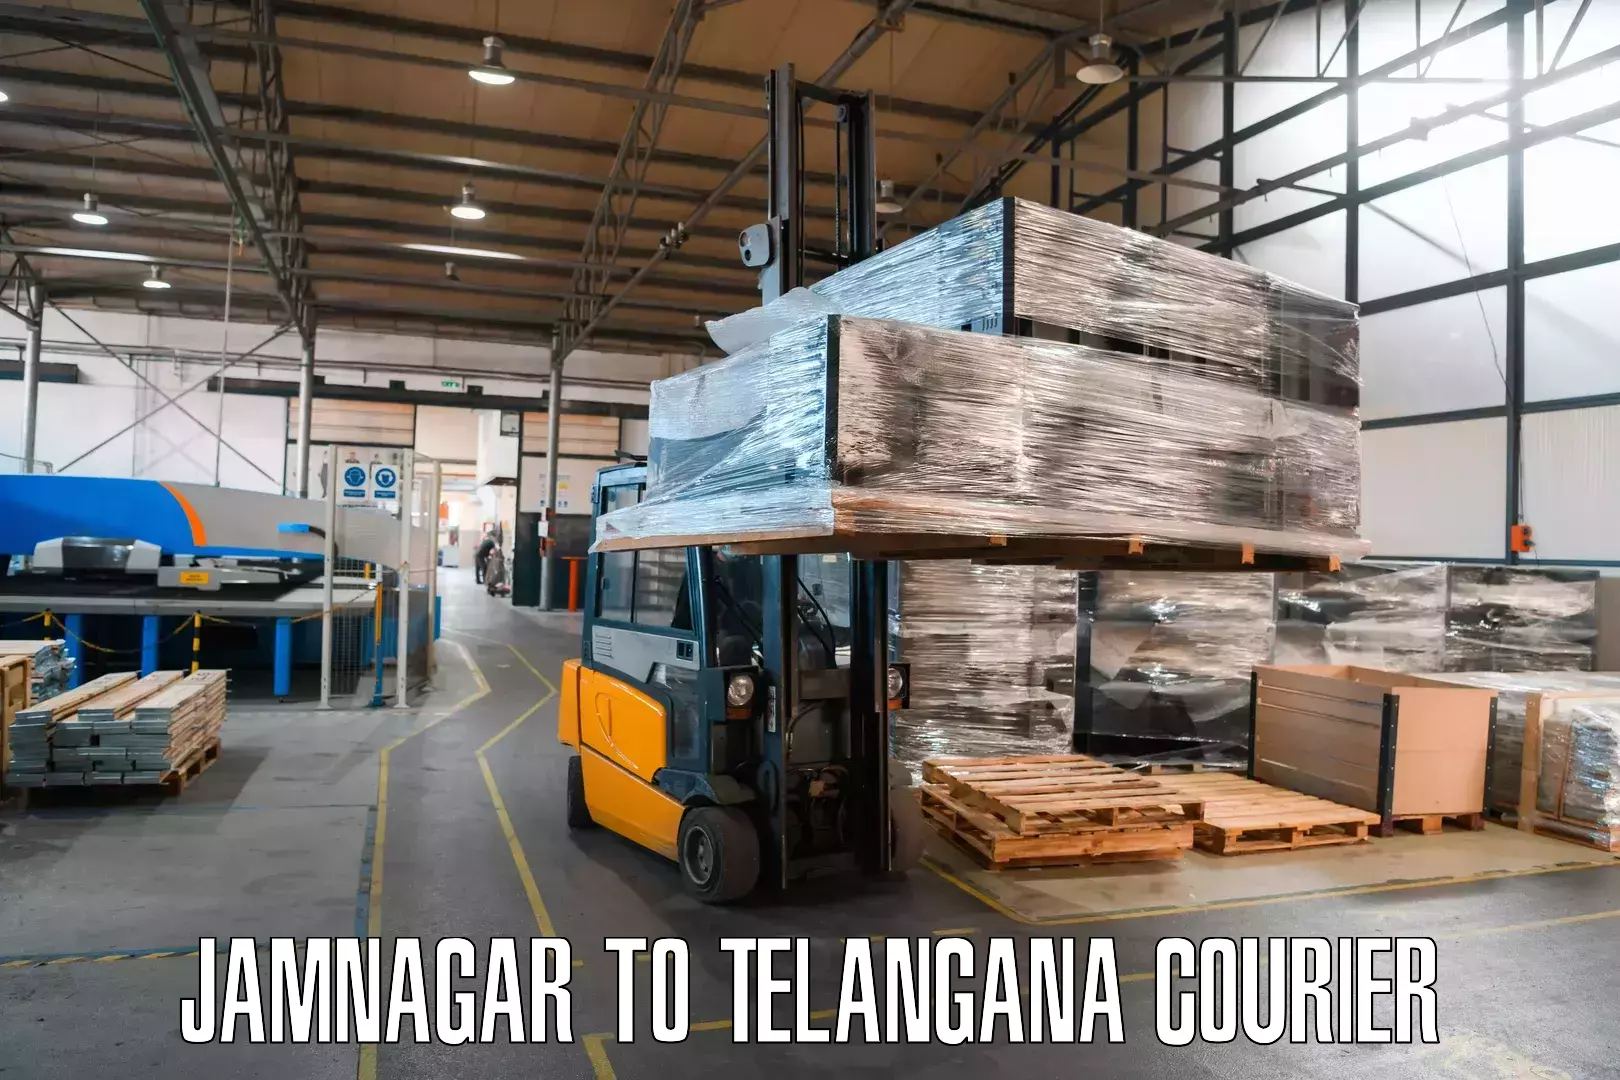 Logistics service provider Jamnagar to Telangana